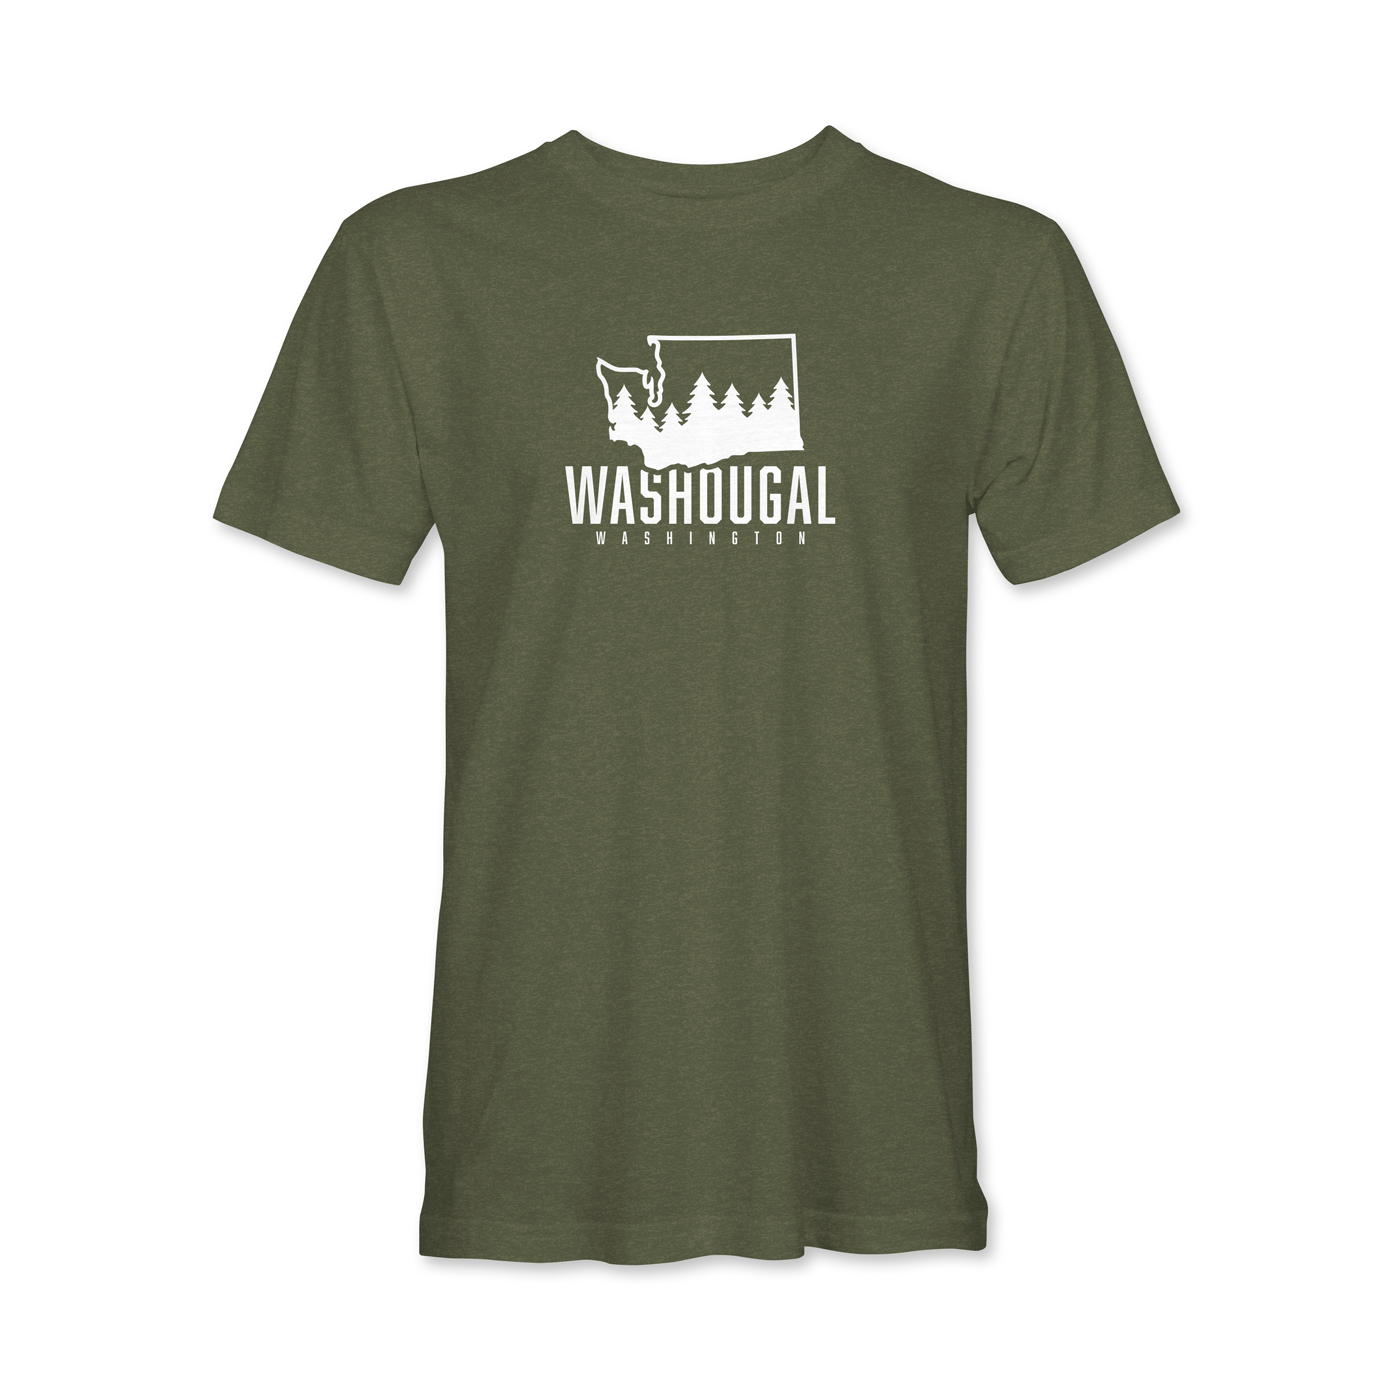 Washougal Washington State and Trees T-Shirt